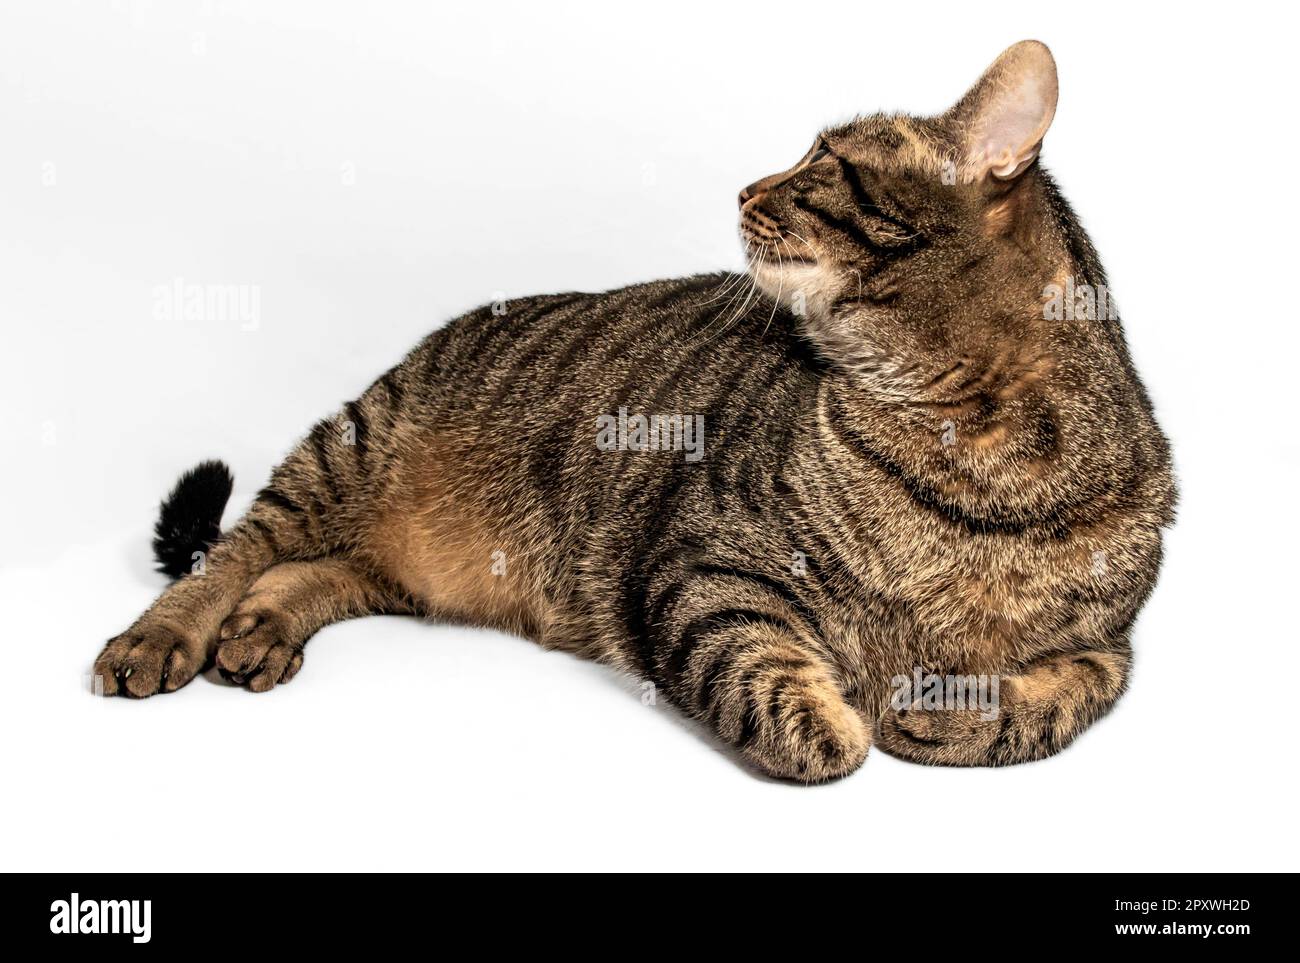 Stordimento grigio e nero gatto tabby con intricate luci arancioni giace in giù, il suo corpo rilassato e il suo sguardo verso l'alto a sinistra. Il suo giallo intenso-gre Foto Stock